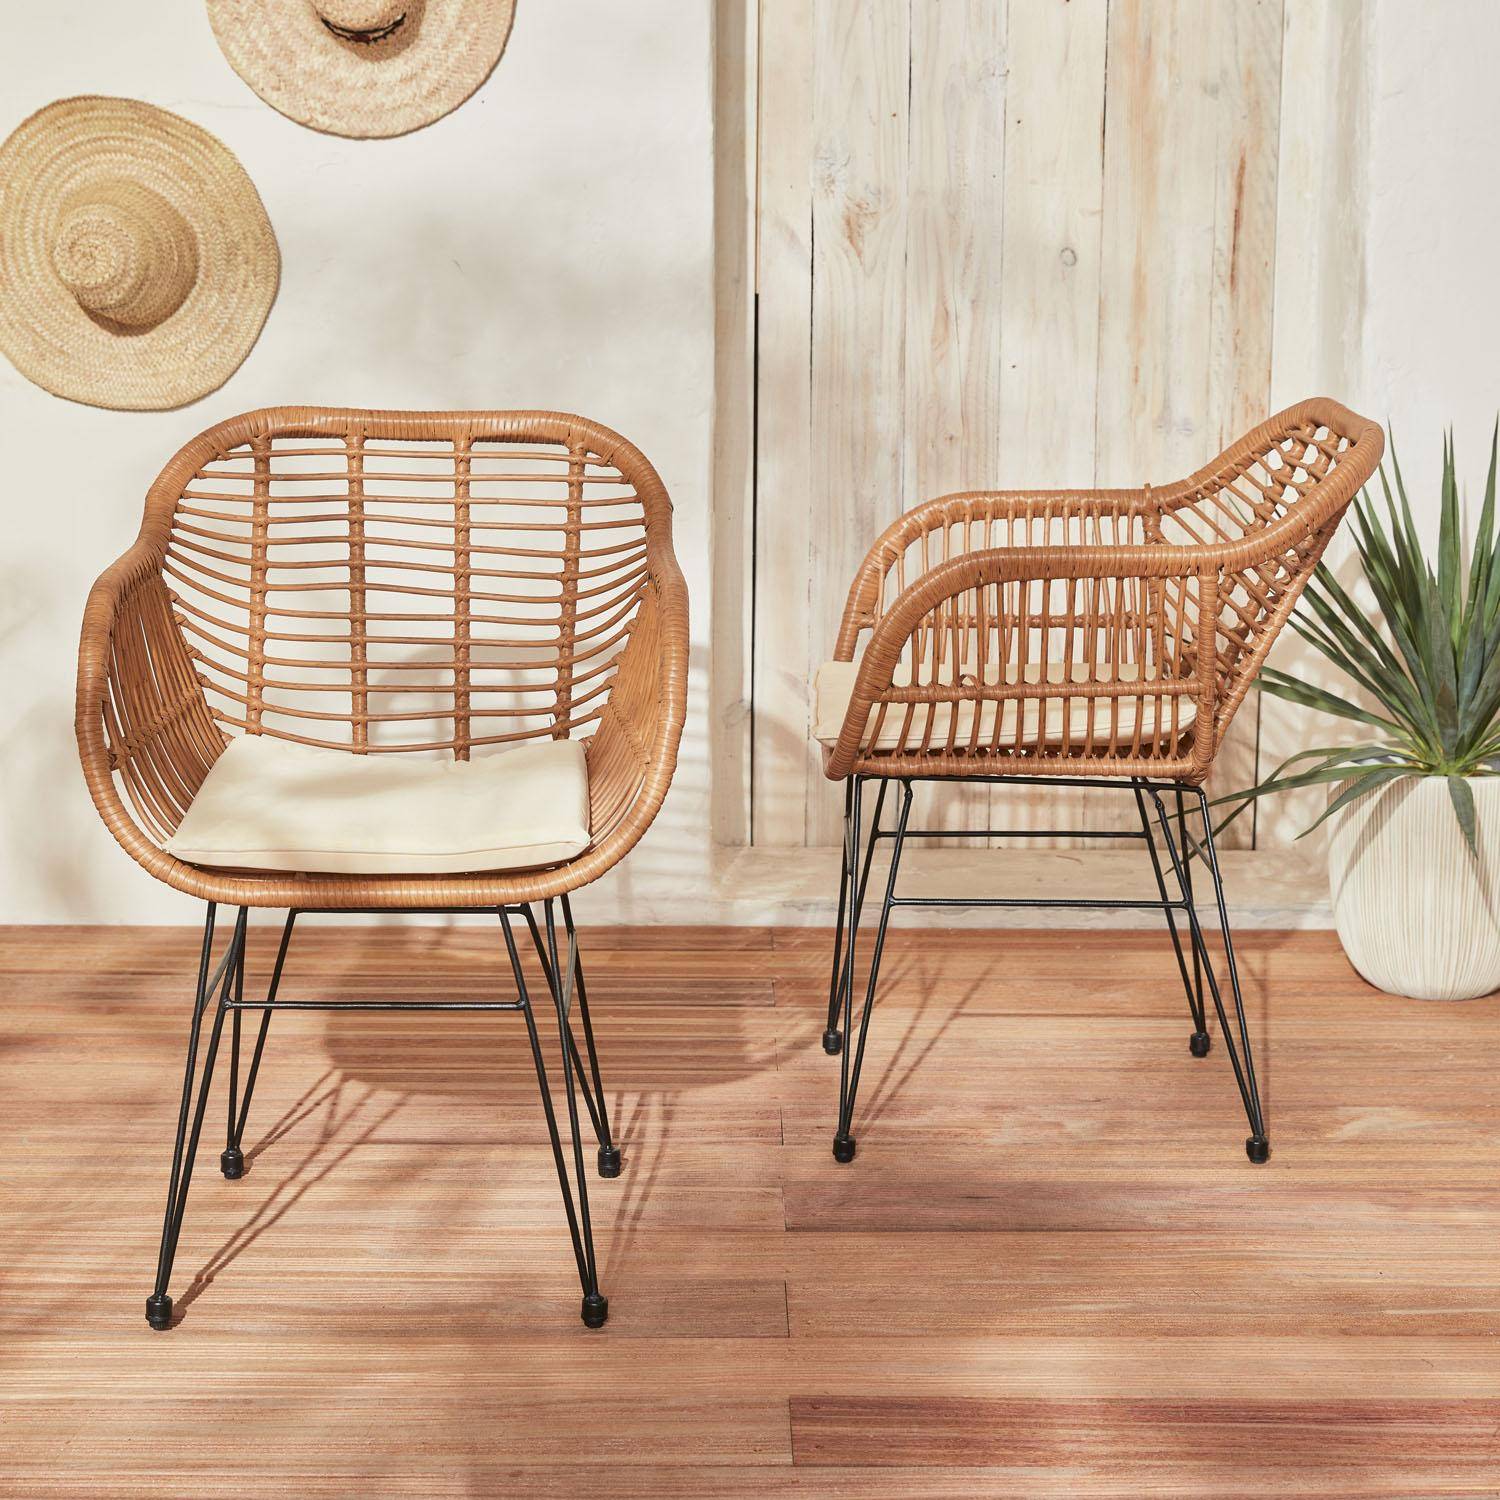 Set van 2 wicker stoelen met bamboe effect, zwart metalen frame, afneembare hoezen, beige kussen Photo2